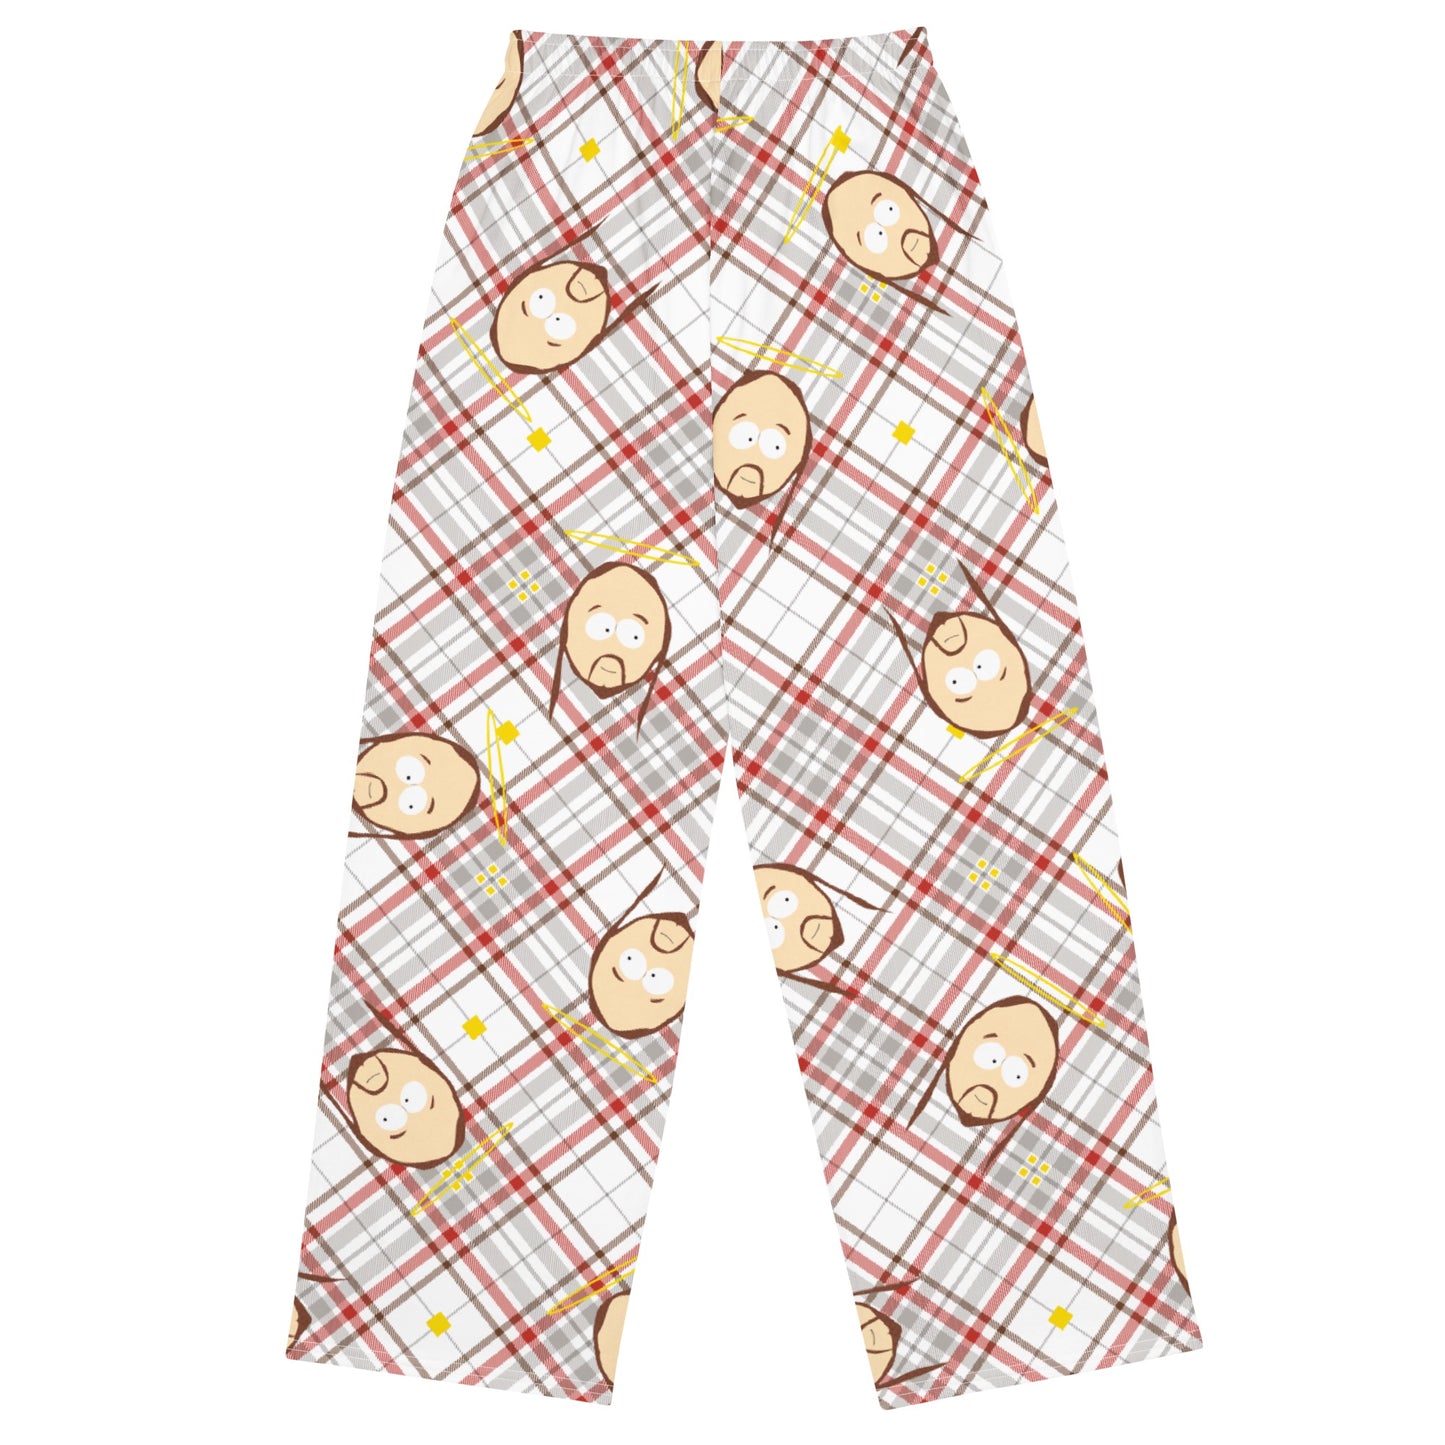 South Park Jesus Plaid Pajama Pants